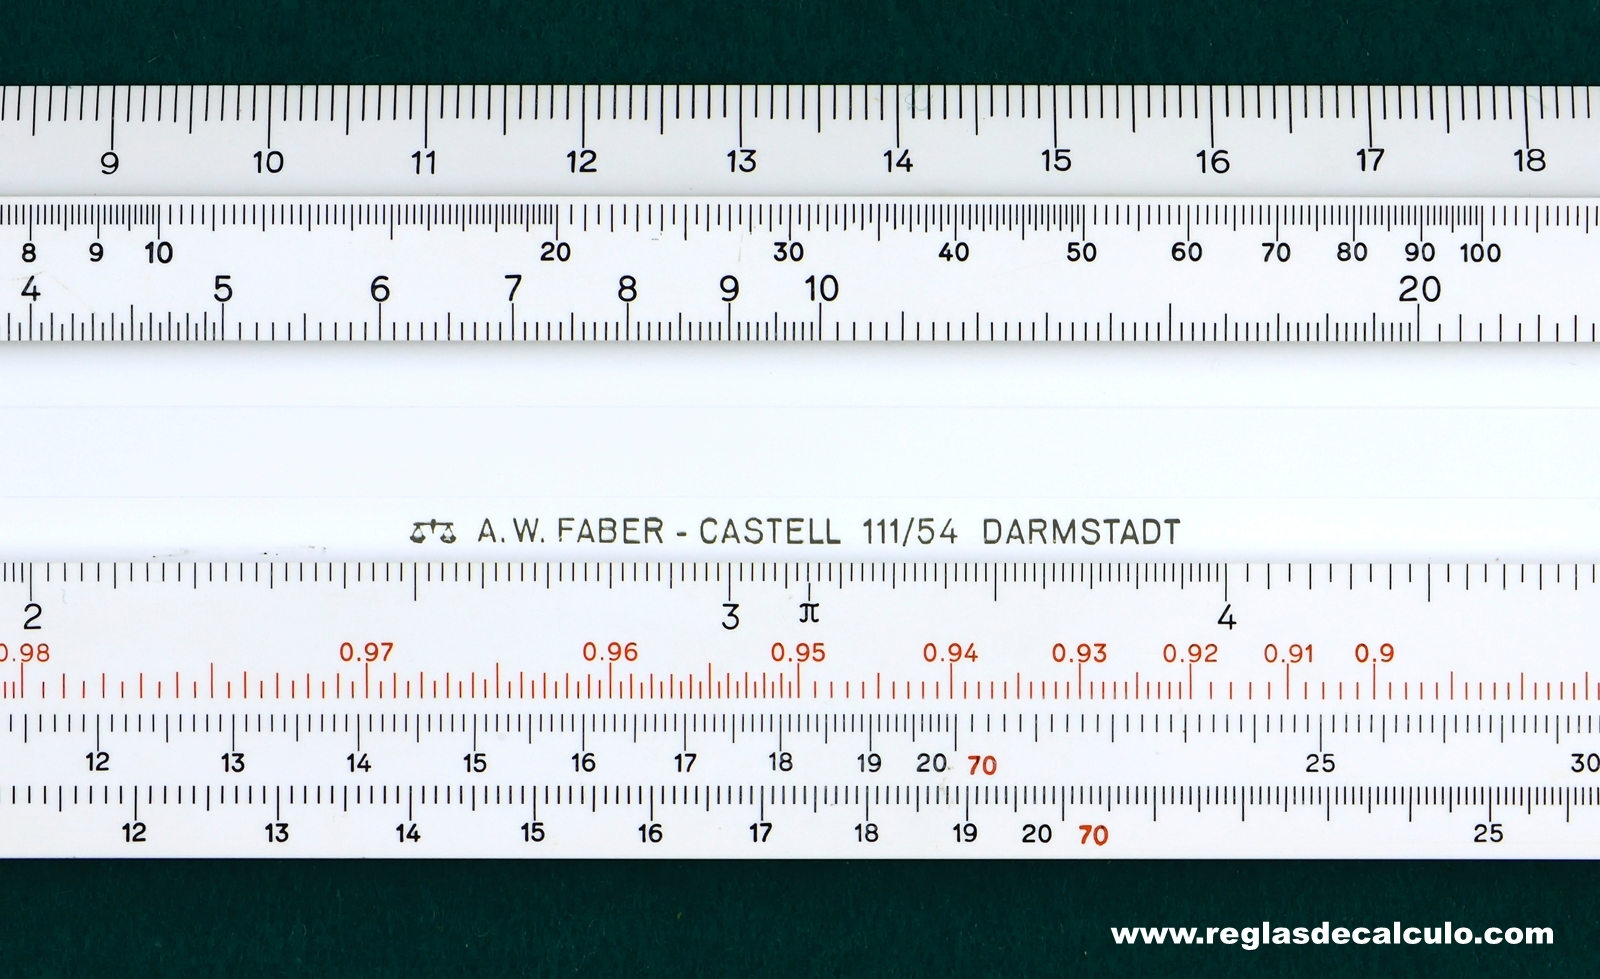 Faber Castell 111/54 Regla de Calculo Slide rule